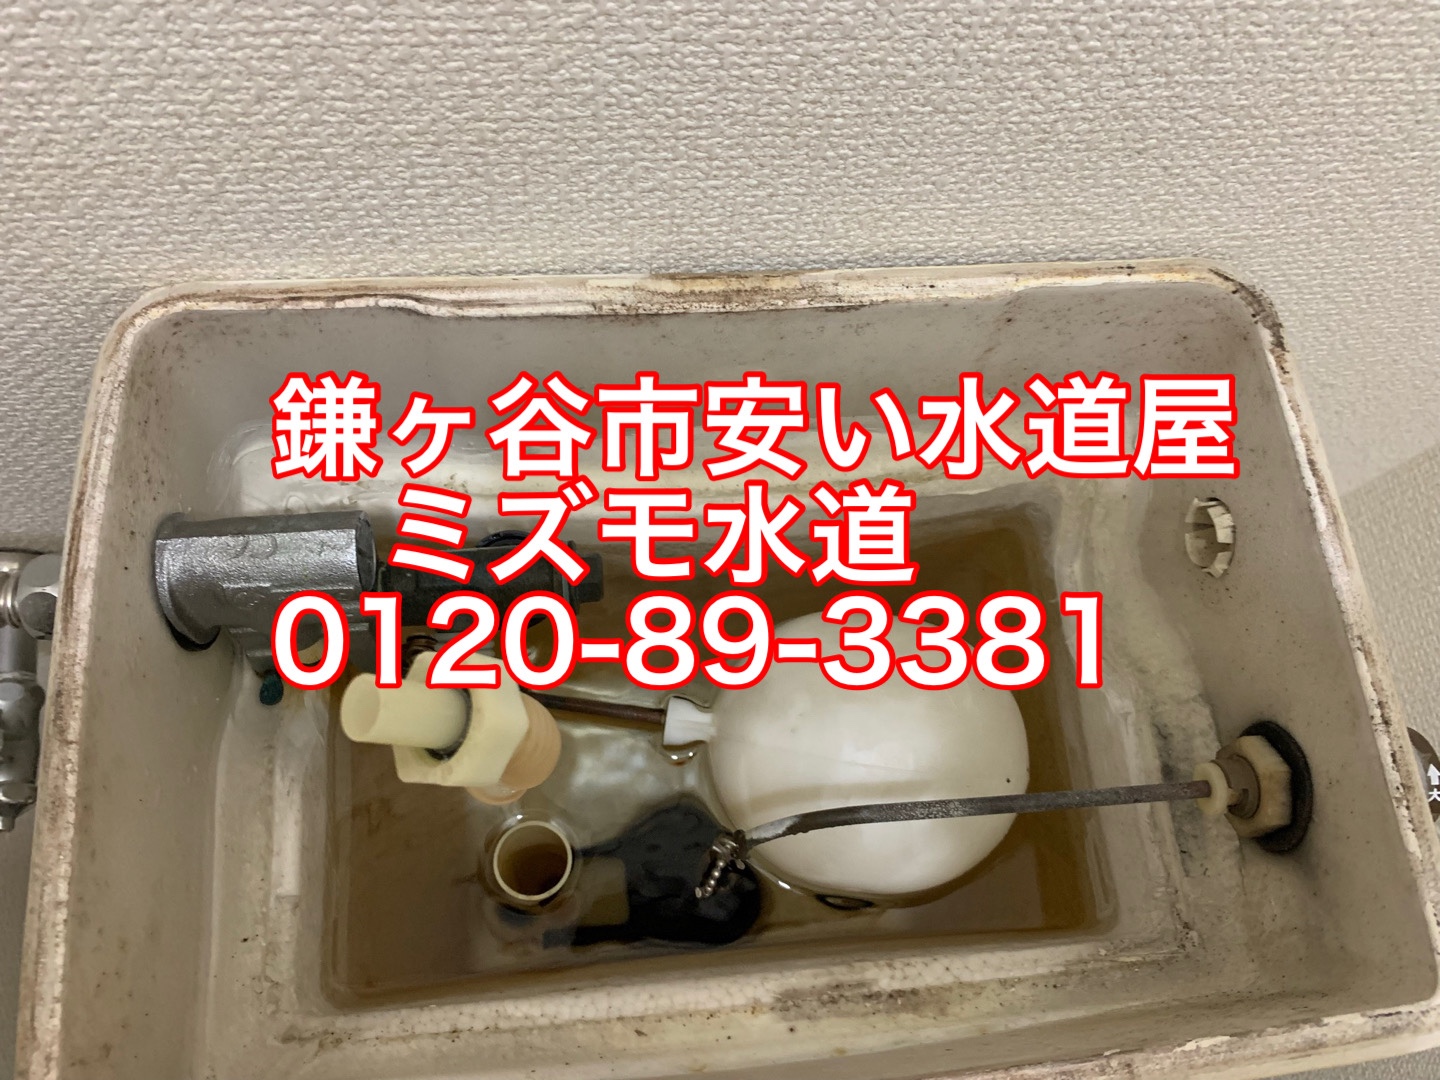 鎌ヶ谷トイレタンク水漏れ修理水道屋